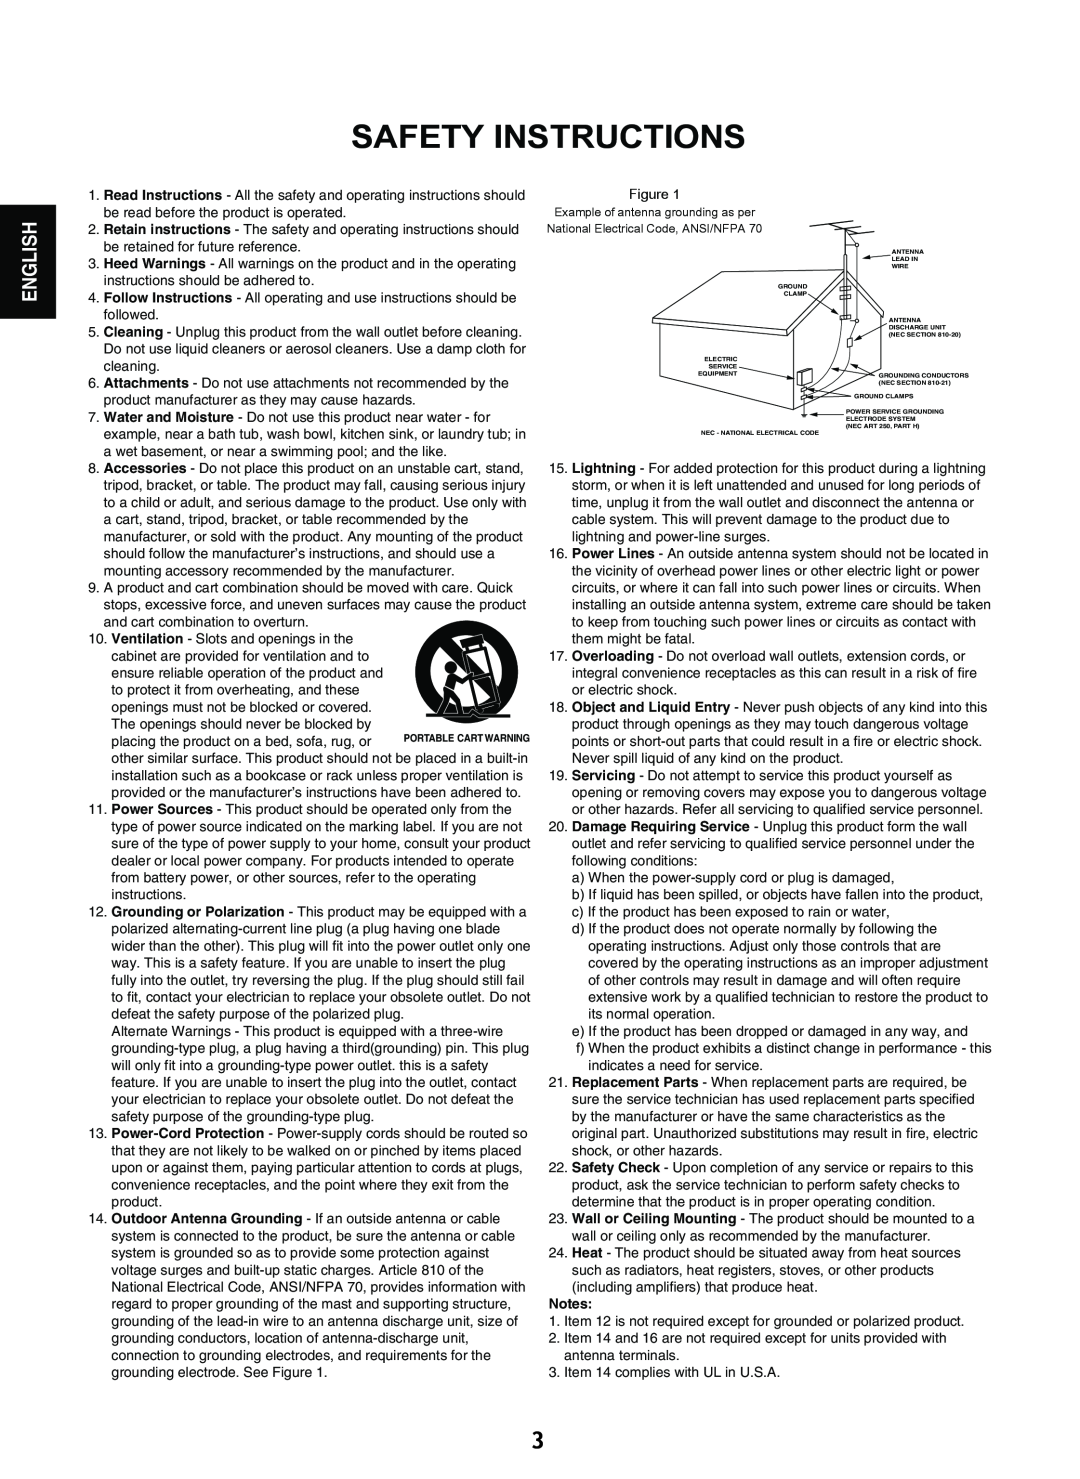 Sherwood V-903 manual Safety Instructions, English 